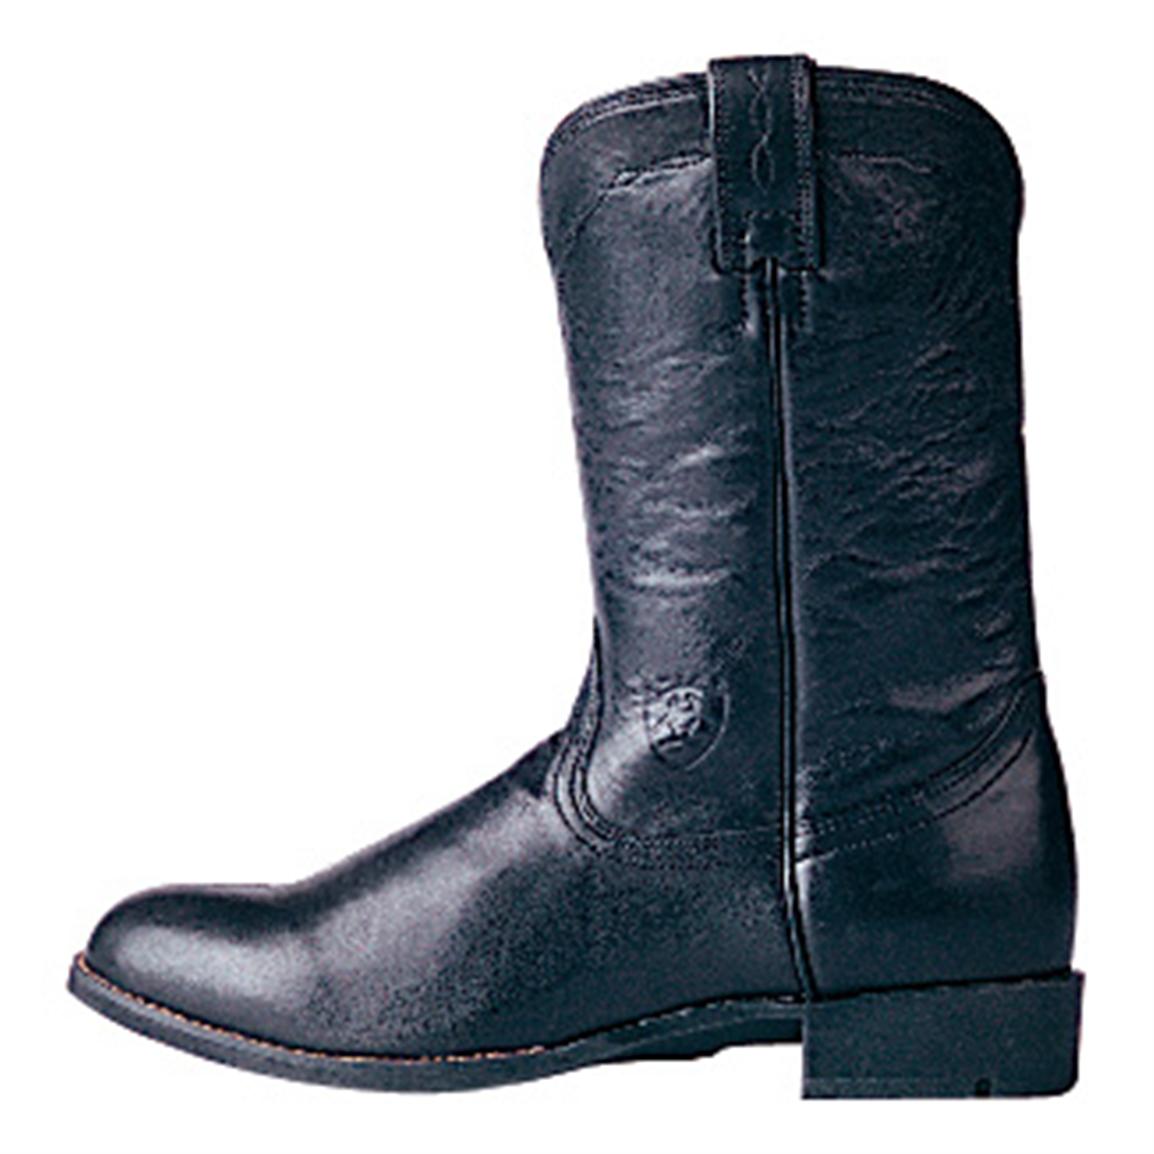 Women's Cowboy Boots Clearance | Wydział Cybernetyki